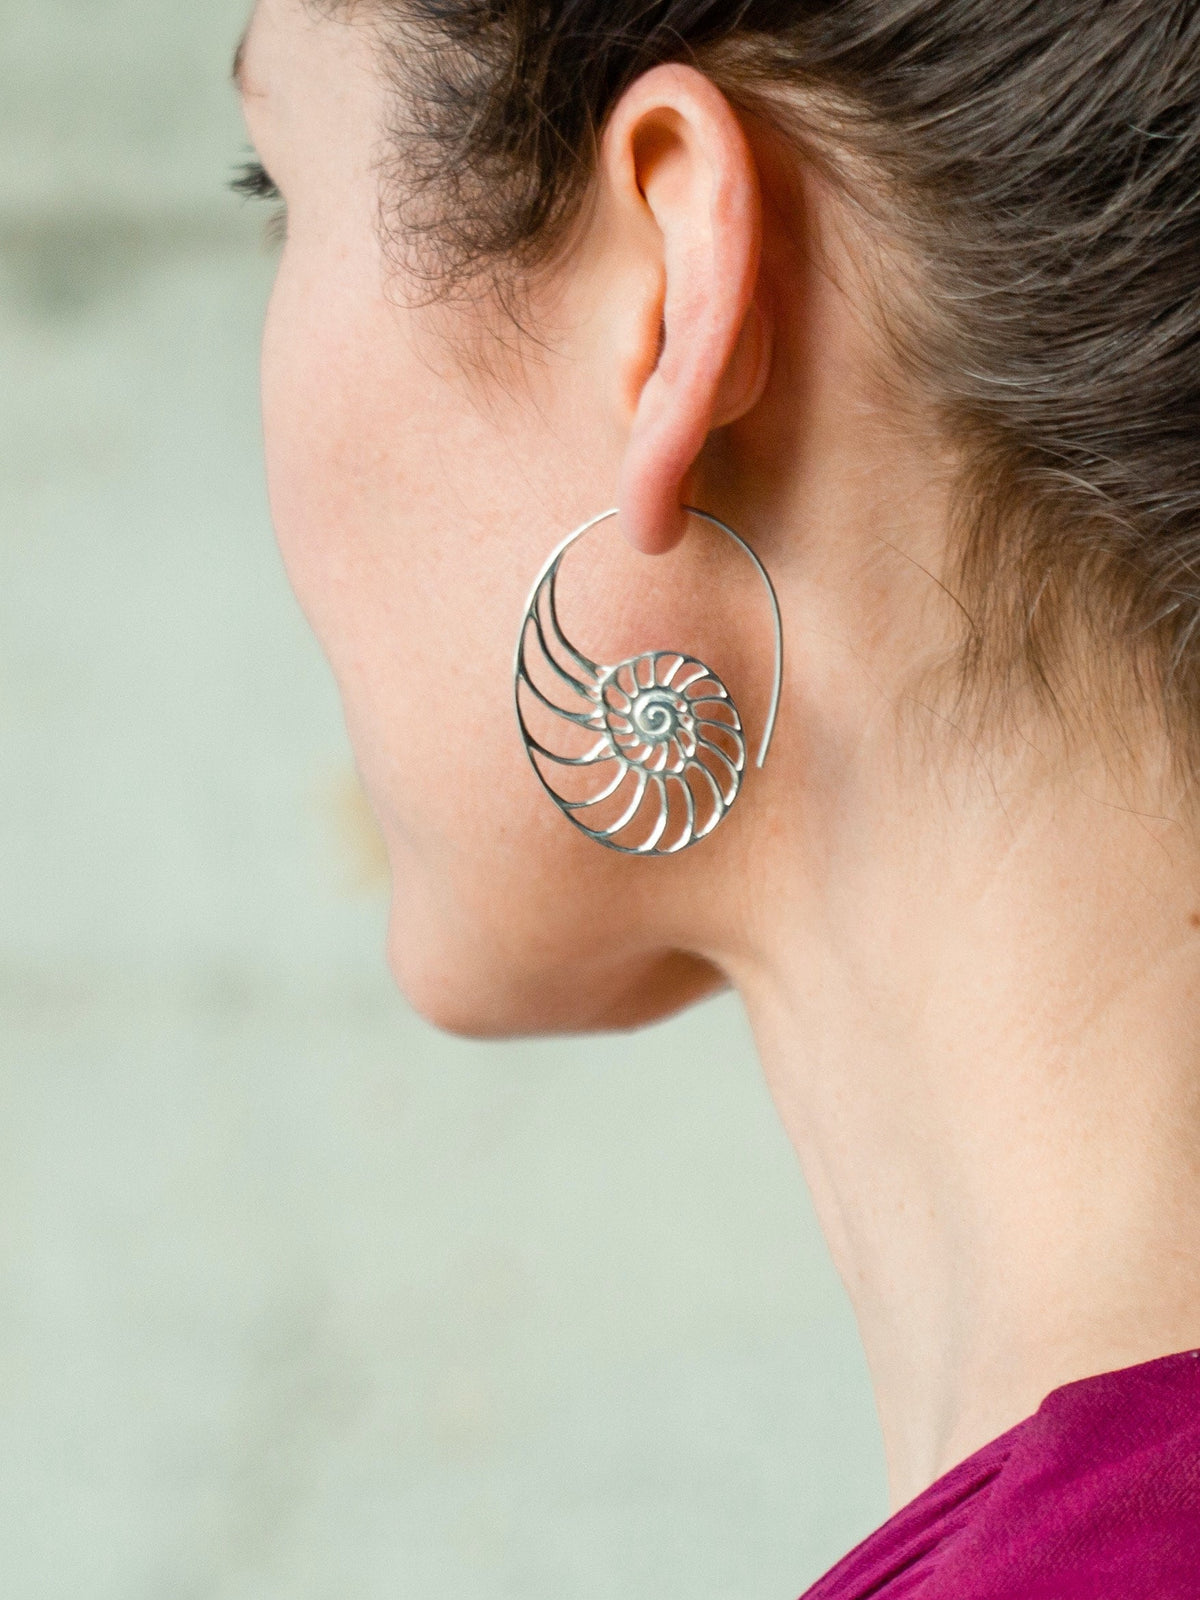 Nautilus Ammonite earrings Sterling Silver Earrings